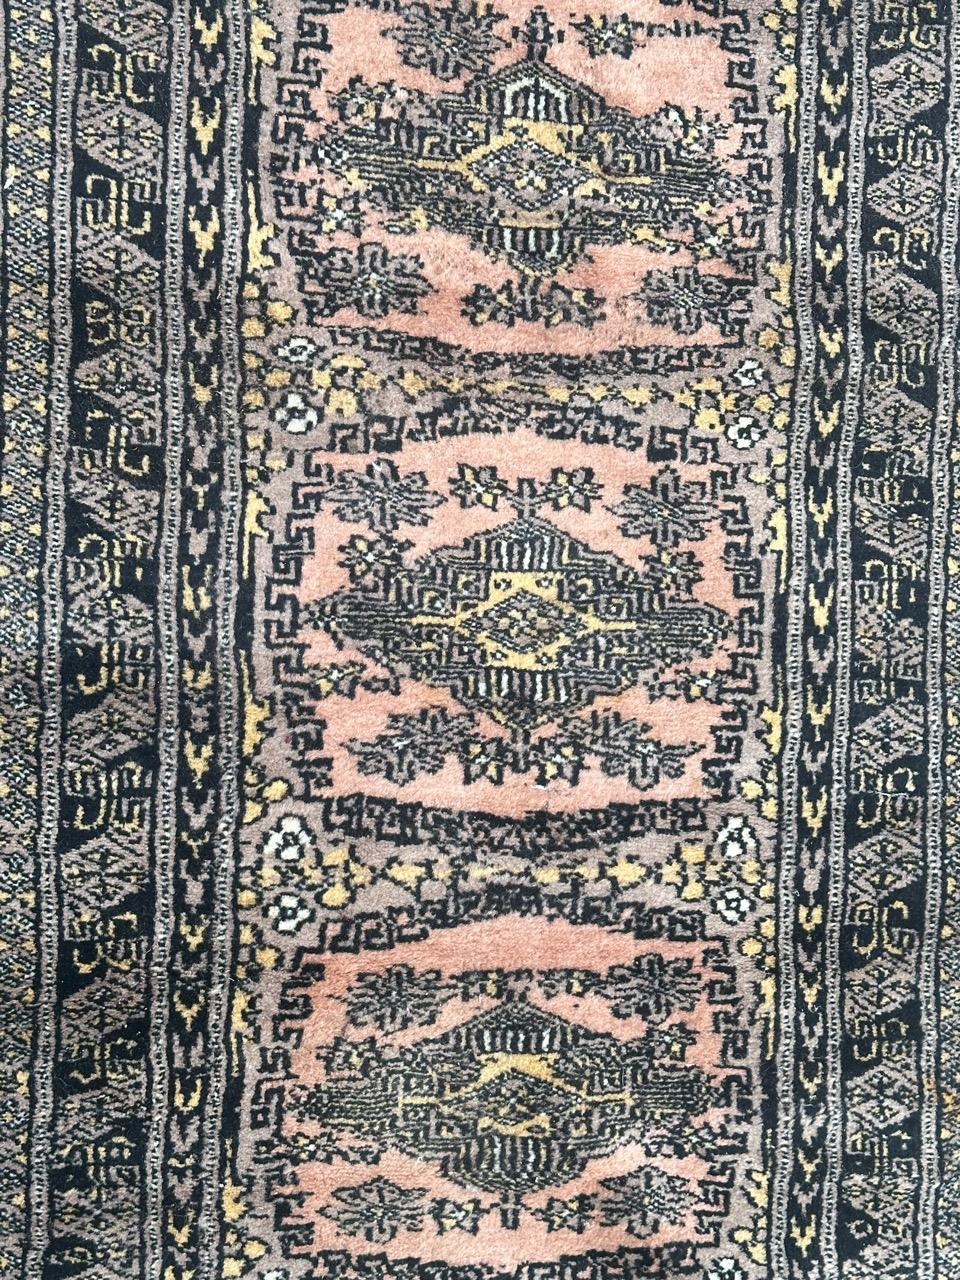 Joli petit tapis pakistanais vintage avec de jolis motifs géométriques dans le style des tapis turkmènes, et de belles couleurs avec du rose, du gris, du jaune et du noir, entièrement et finement noué à la main avec de la laine sur une base de